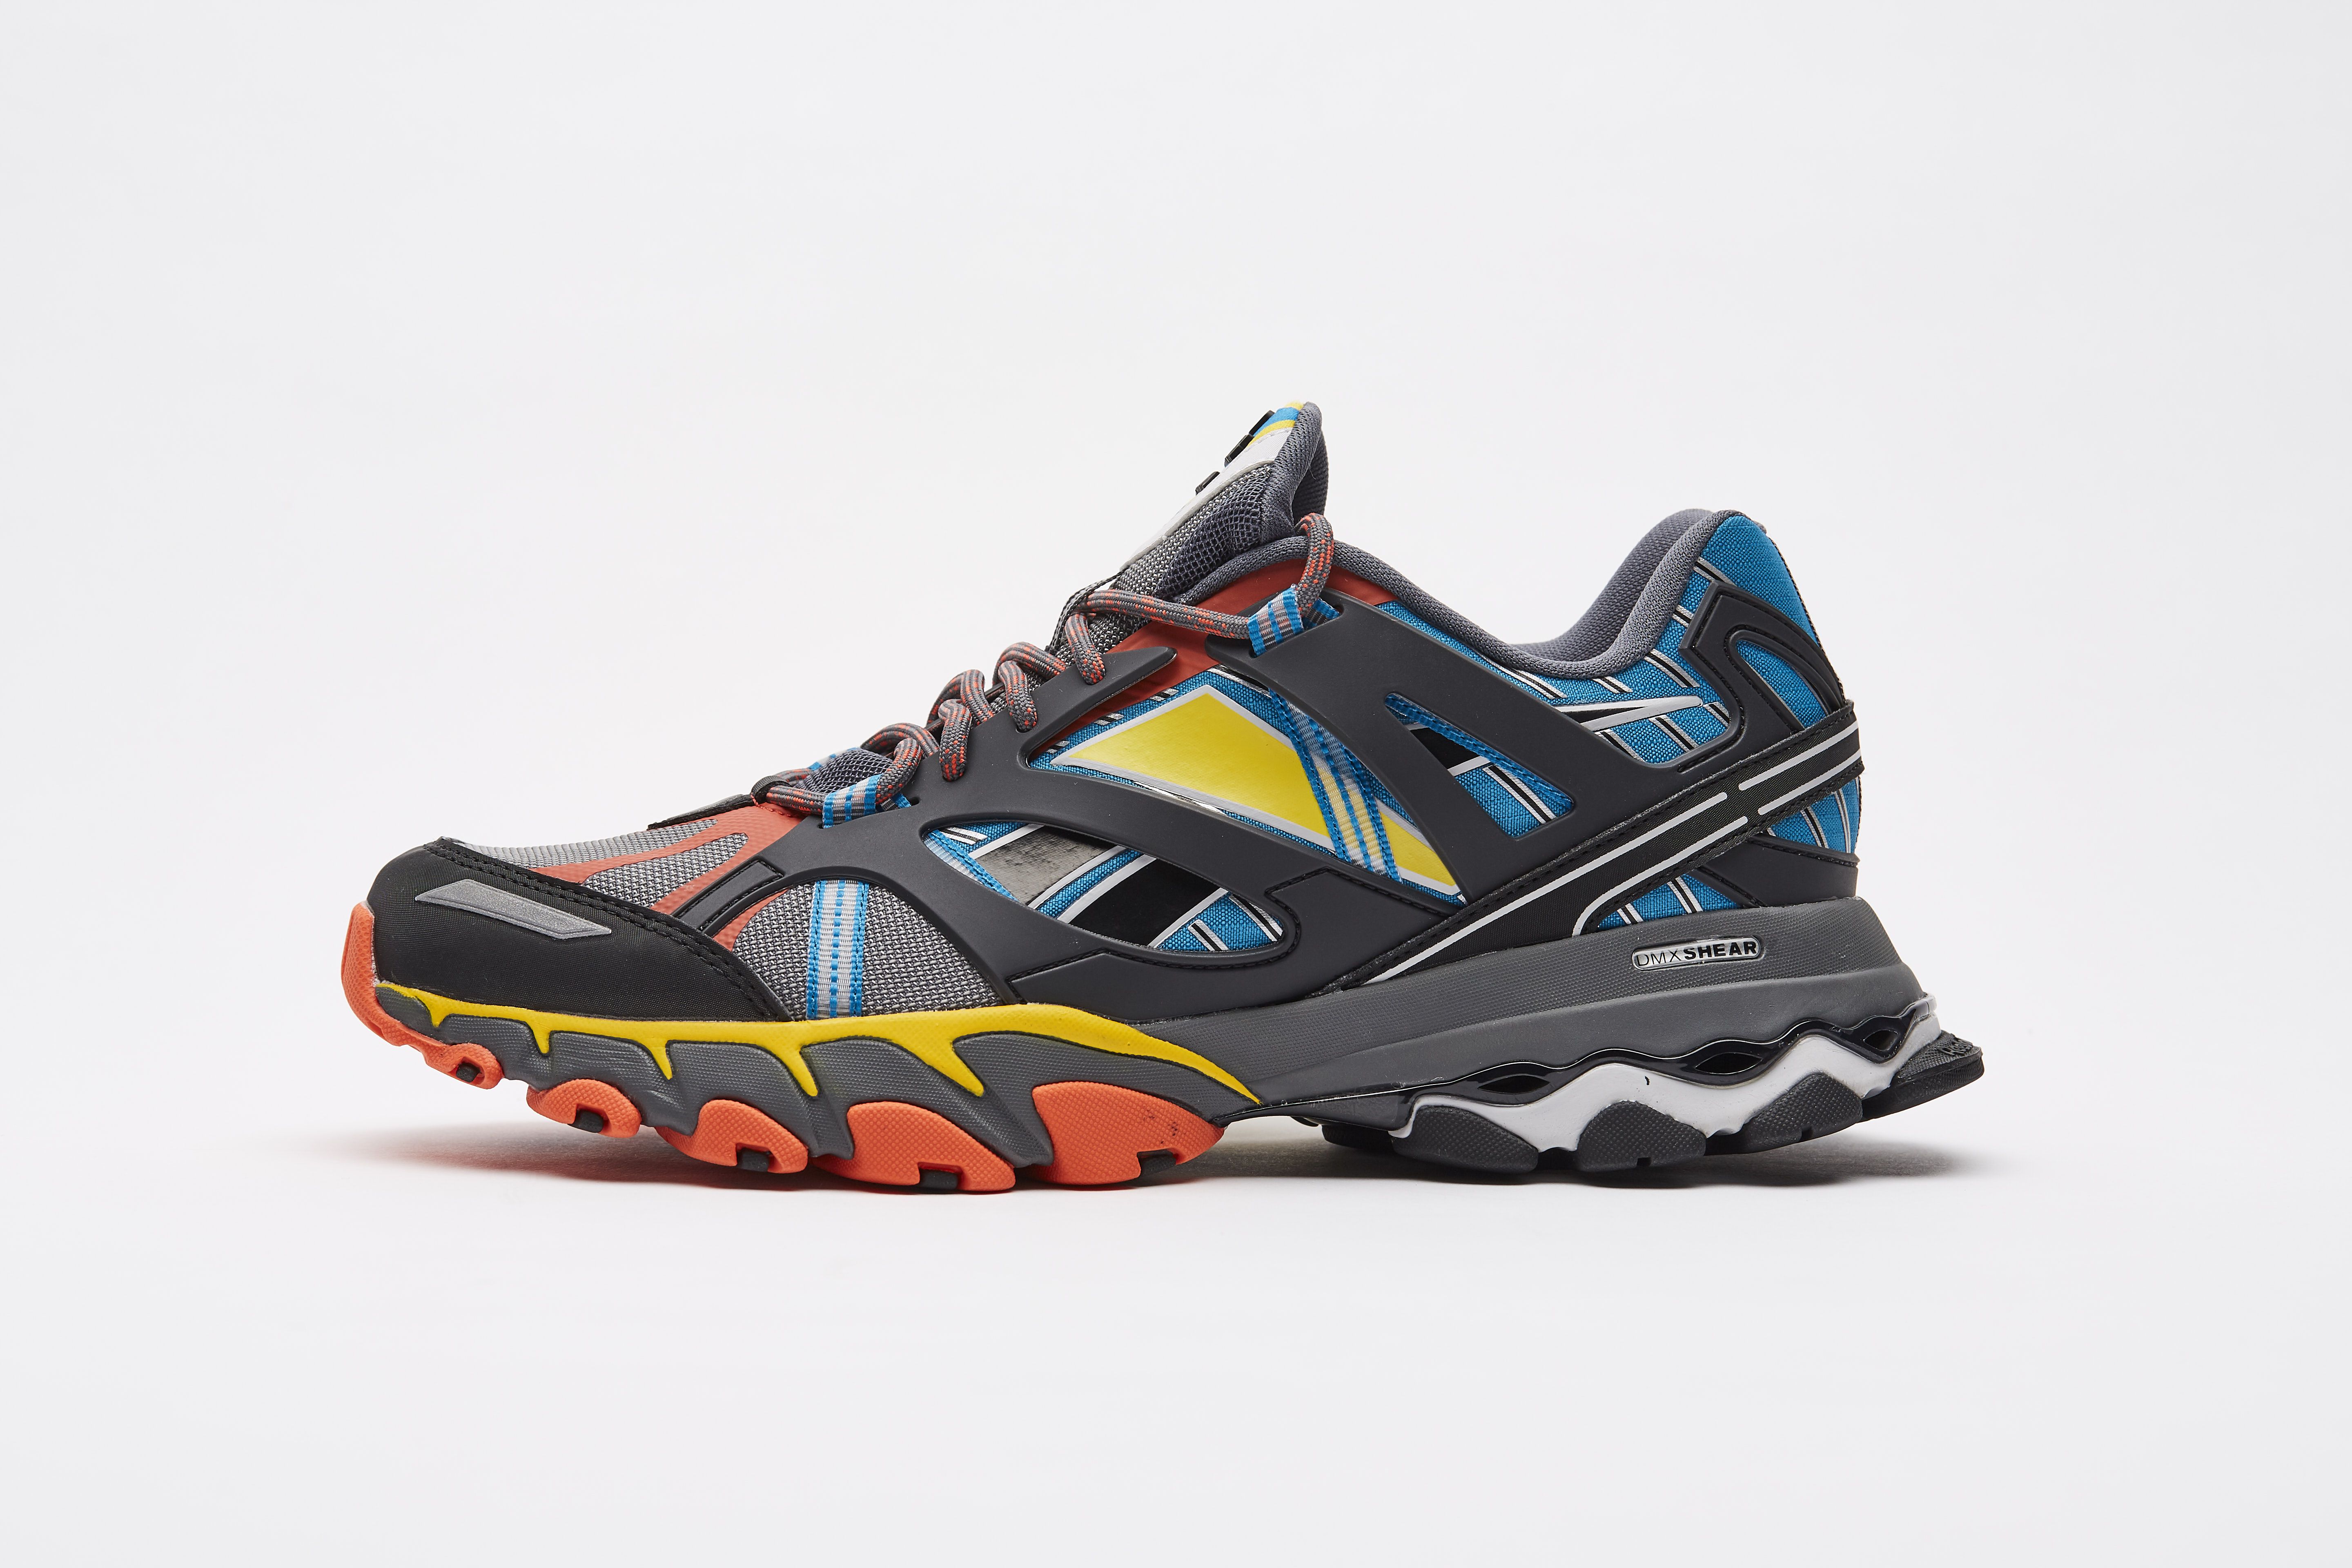 Bonito Plaga Todo tipo de DMX Trail Shadow: fusión de moda y trail running en las nuevas zapatillas  de Reebok